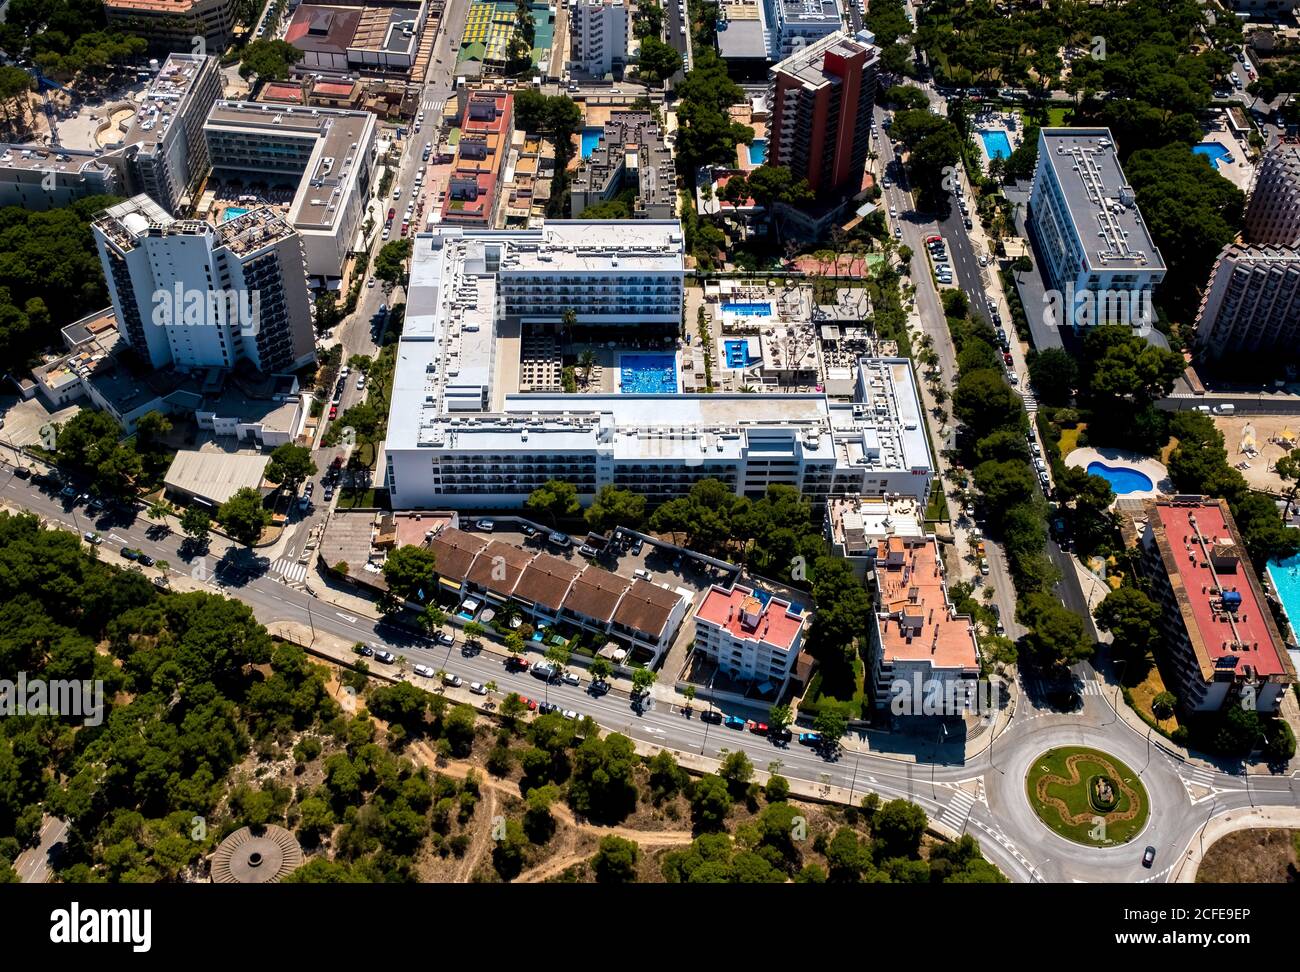 Vista aerea, hotel 3 stelle, Hotel Riu Playa Park vicino alla spiaggia di Arenal con Balneario 5, Balneario 6, Balneario 5, S'arenal, Arenal, Ballermann, Mallorca, Foto Stock